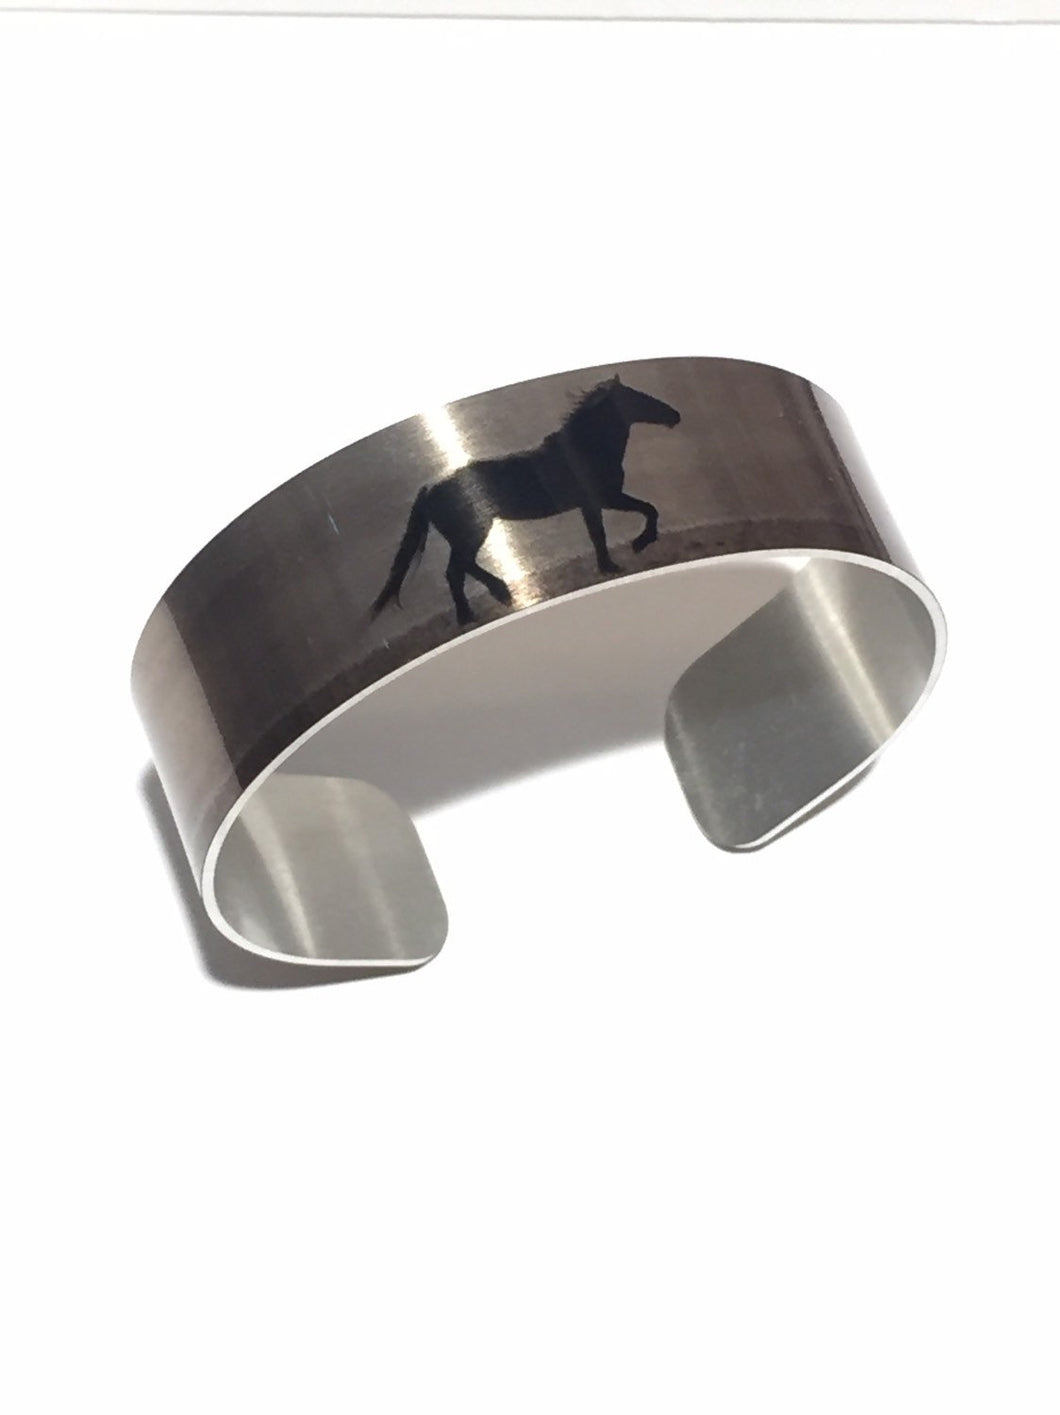 Aluminum Cuff Bracelet. Wild Horse Photo Cuffs 